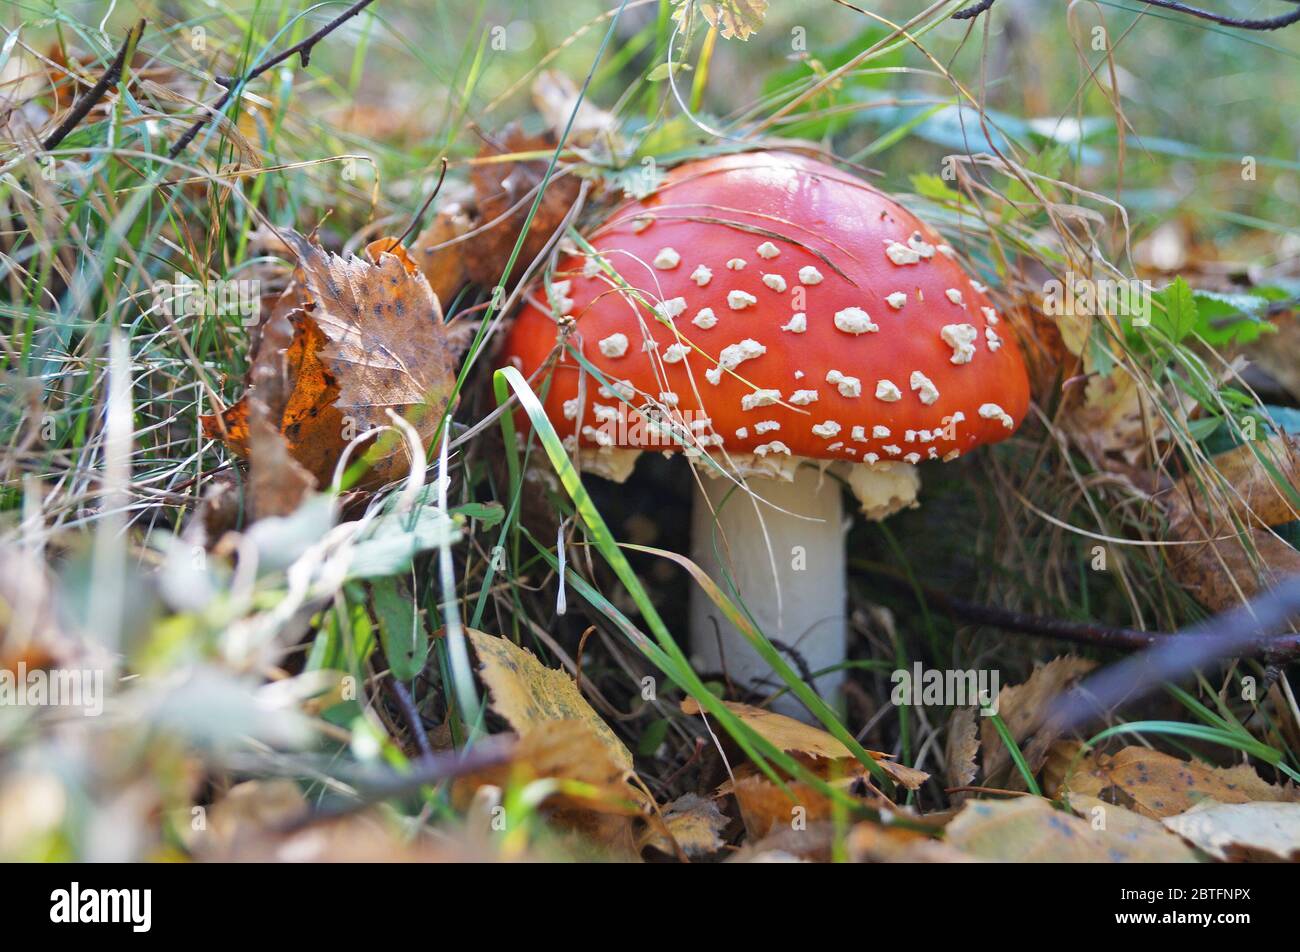 Le champignon Amanita, avec un chapeau rouge dans un point blanc et une  jambe blanche, pousse dans l'herbe de la forêt Photo Stock - Alamy